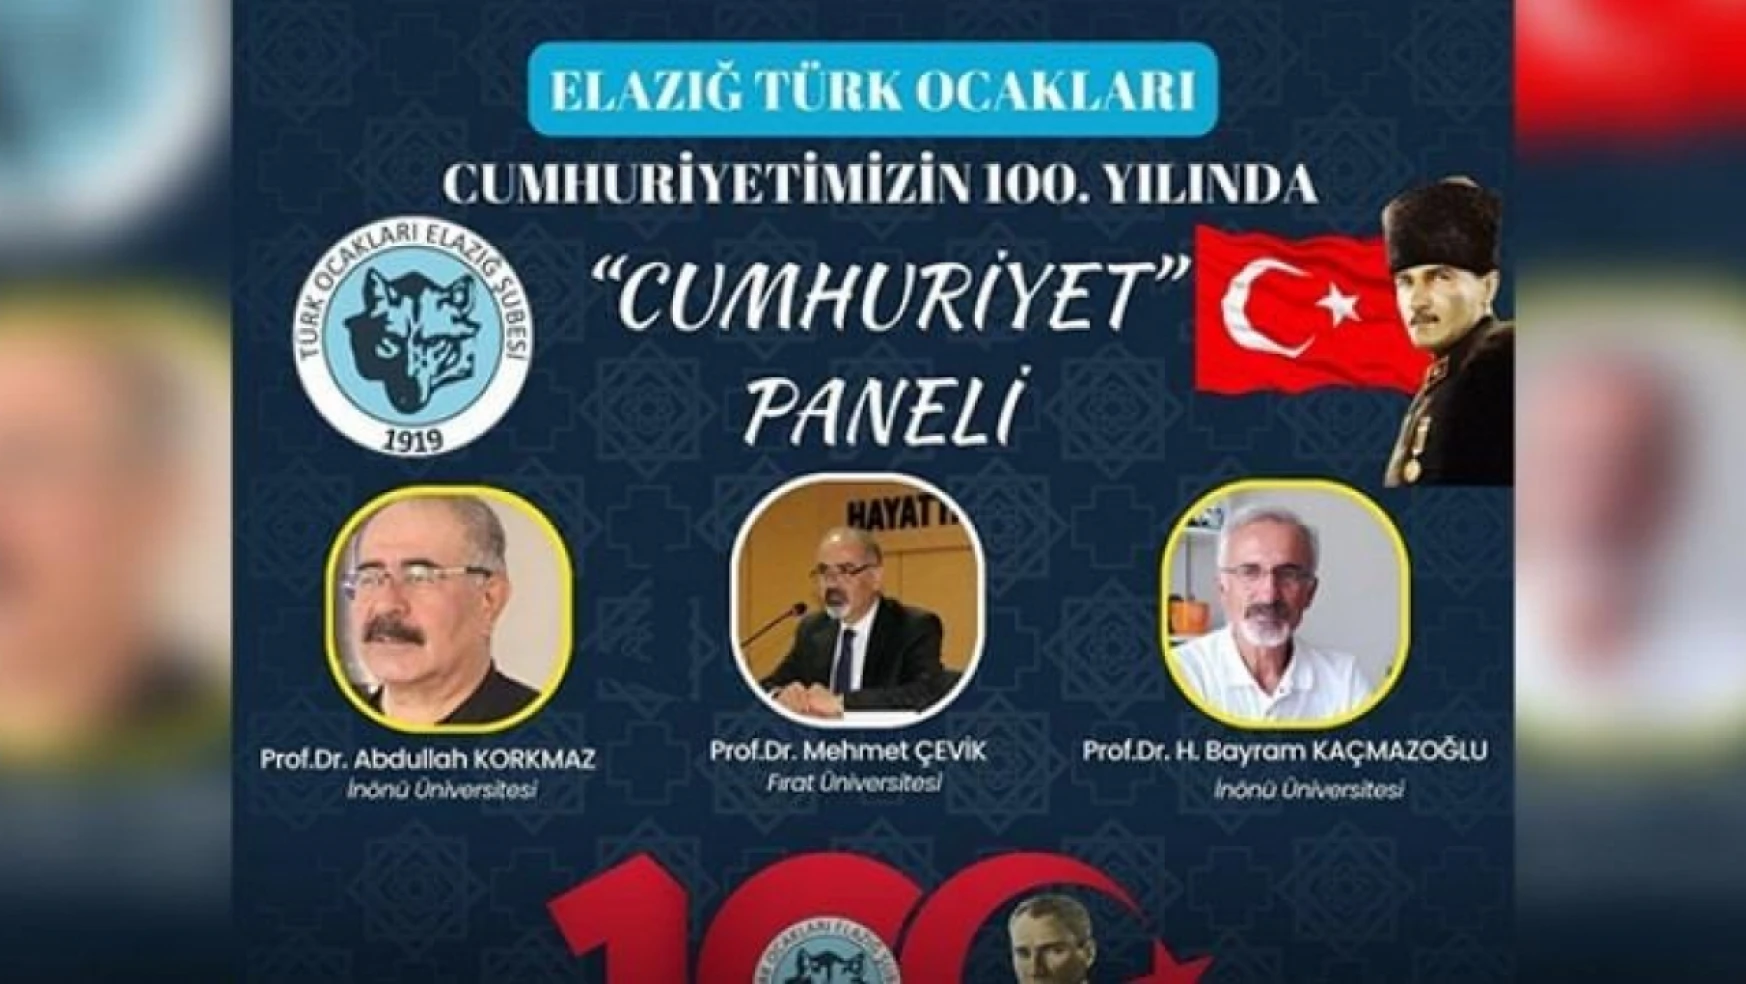 Elazığ'da 'cumhuriyet paneli' düzenlenecek